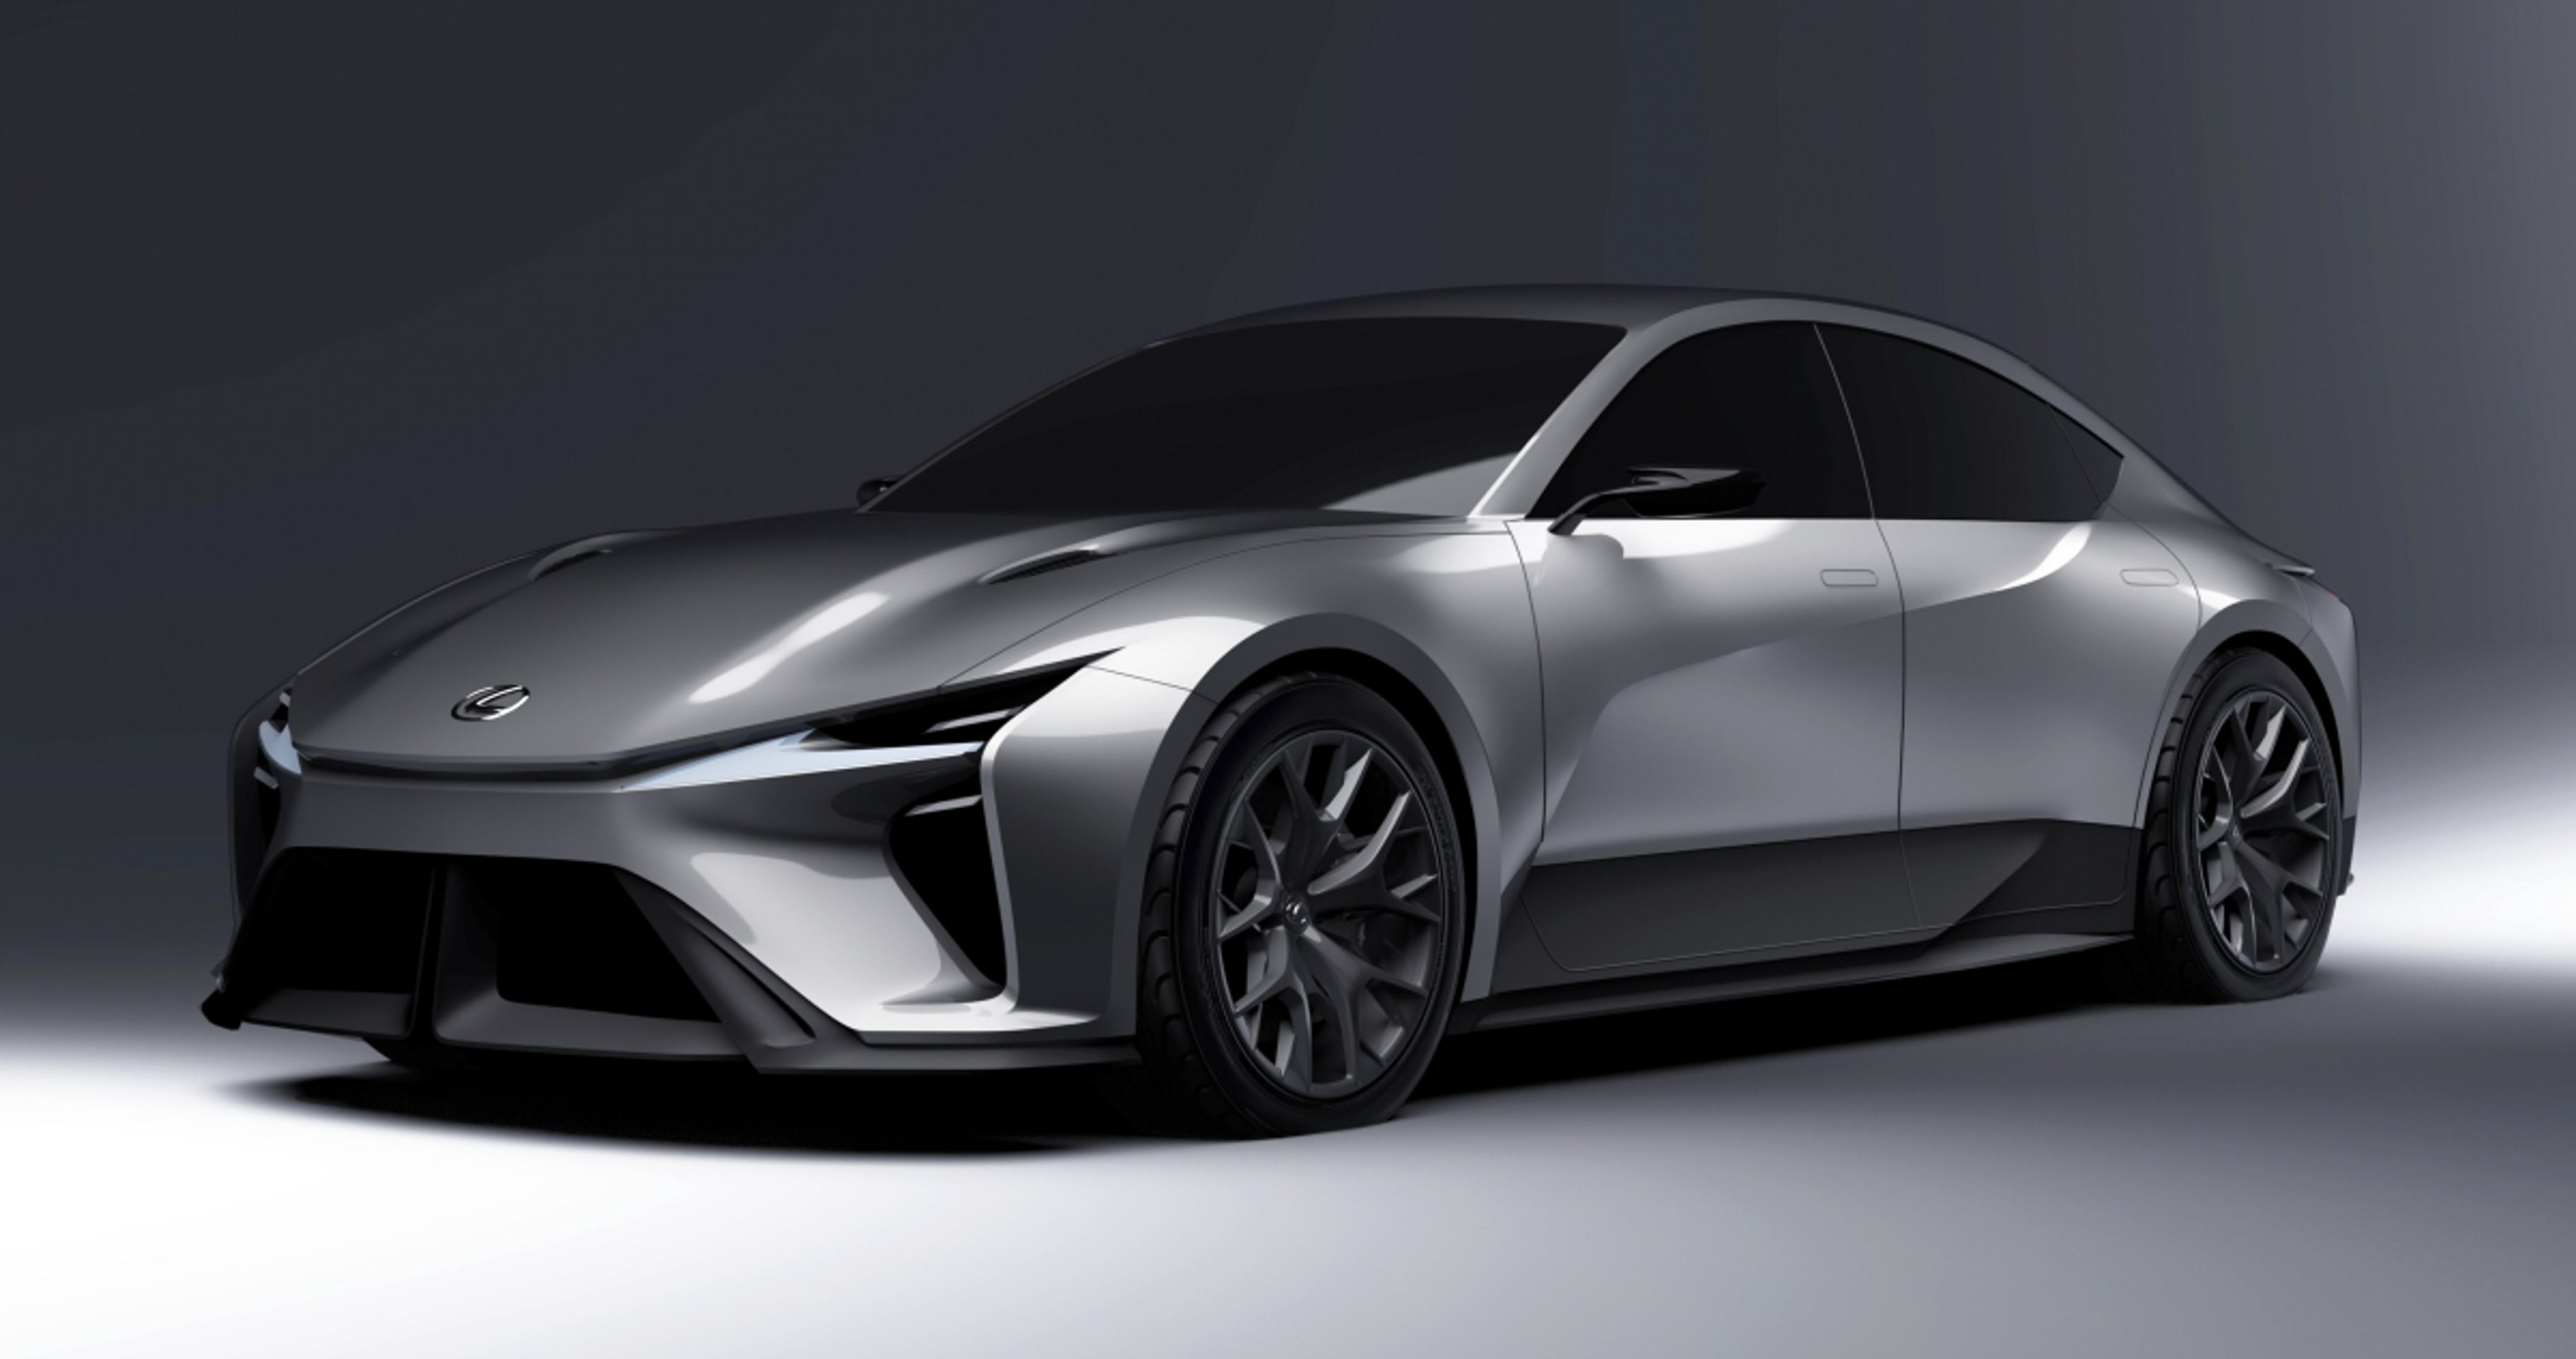 Budoucí bateriové vozy značek Toyota a Lexus - Takhle vypadá bateriová budoucnost podle značek Toyota a Lexus (15/23)